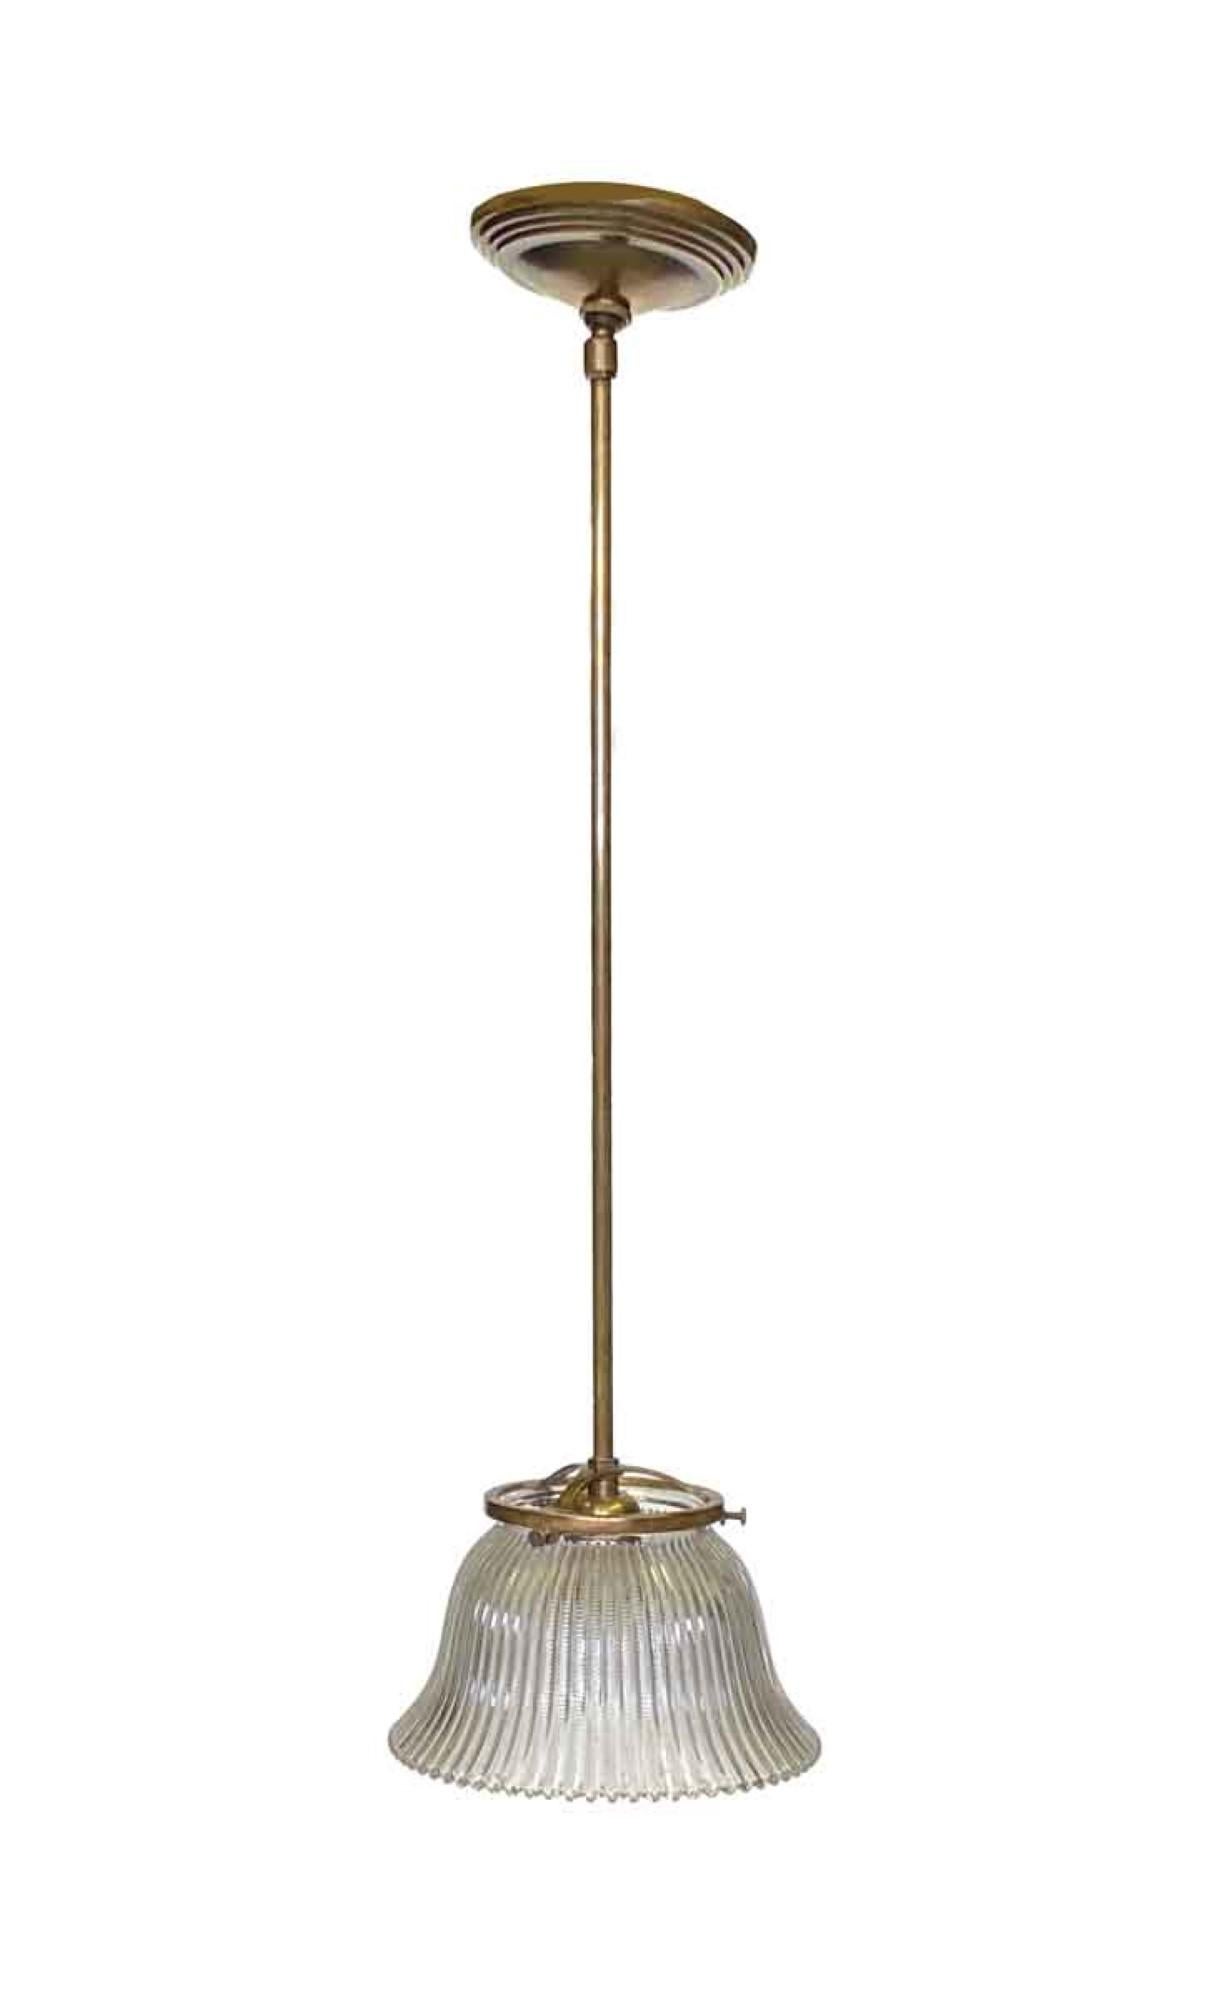 Holophane-Glasschirm aus dem Jahr 1910, der in Gaslaternen verwendet wird und zu einer hängenden Deckenleuchte umfunktioniert worden ist. Kann mit einer Messinghalterung wie abgebildet oder mit einer Halterung aus gebürstetem Stahl ausgestattet